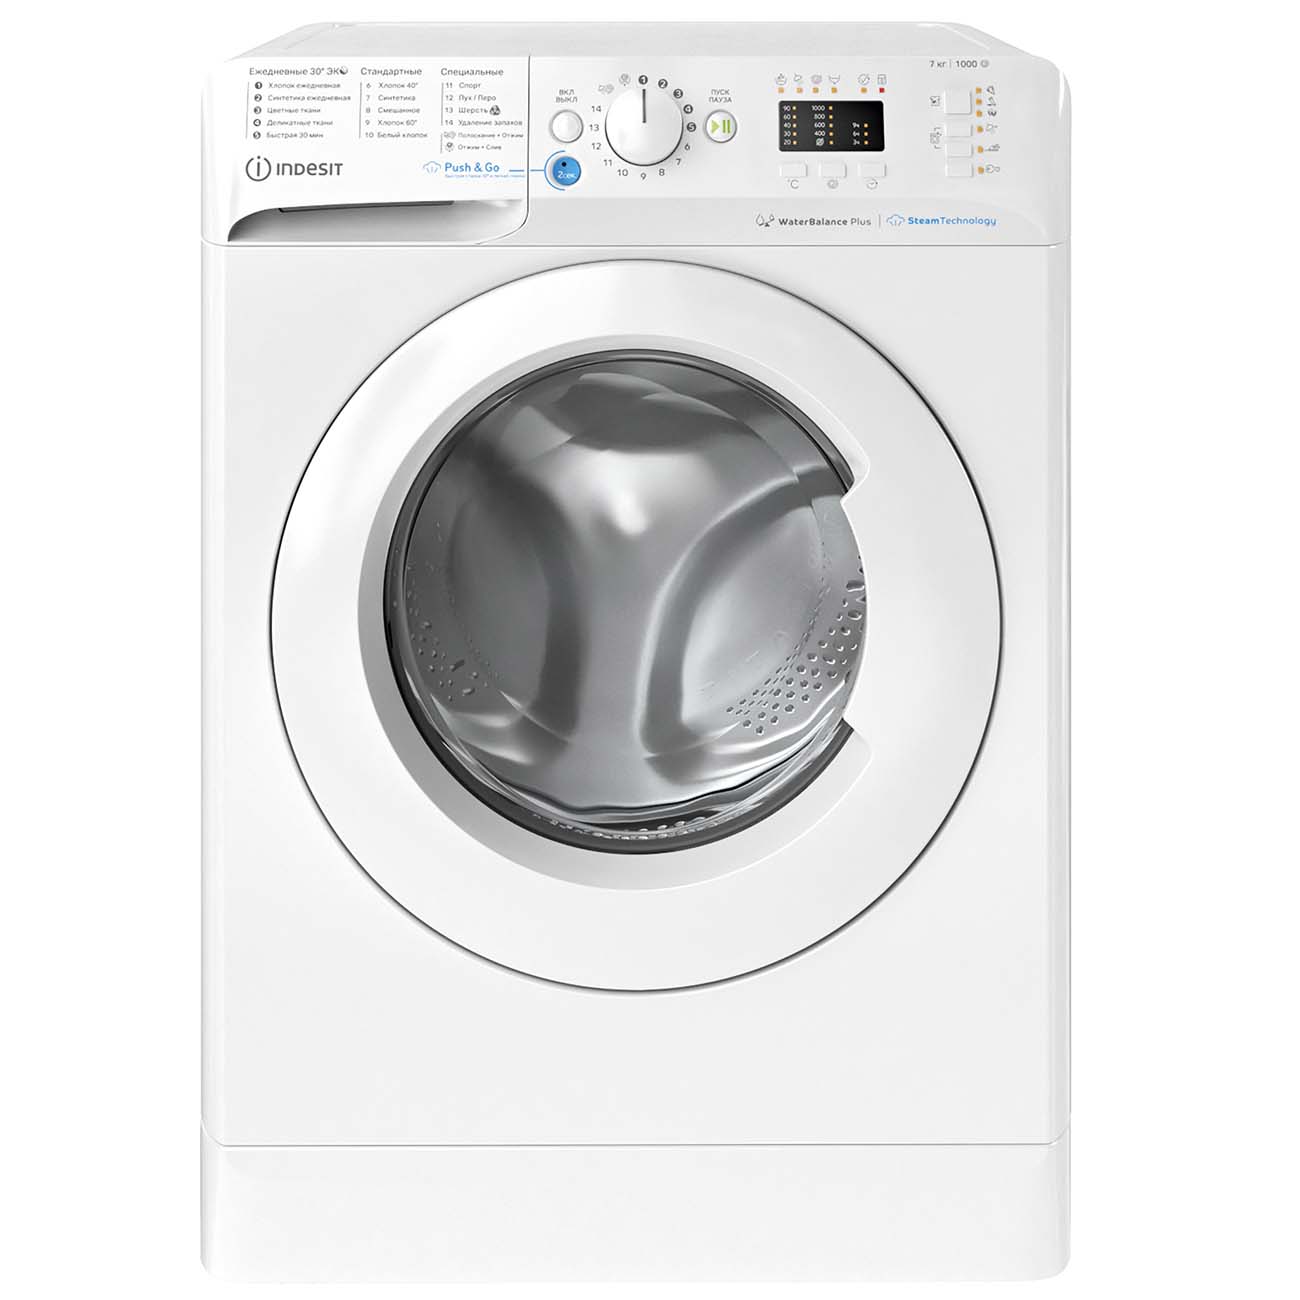 Полное руководство — как правильно включить стиральную машину Indesit